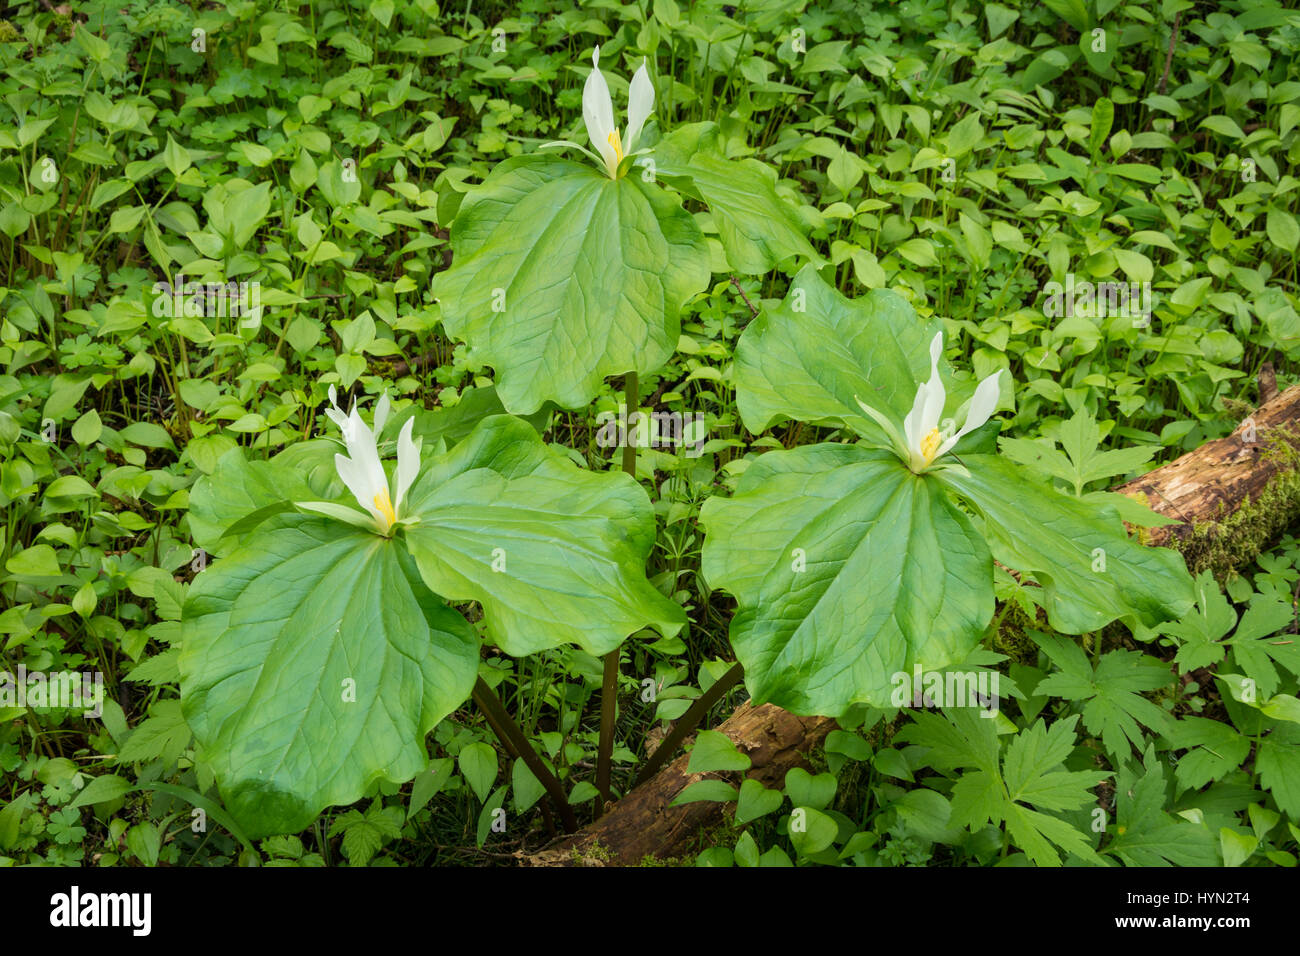 Trillium or Giant White Wakerobin (Trillium albidum); Mount Pisgah Arboretum, Willamette Valley, Oregon. Stock Photo